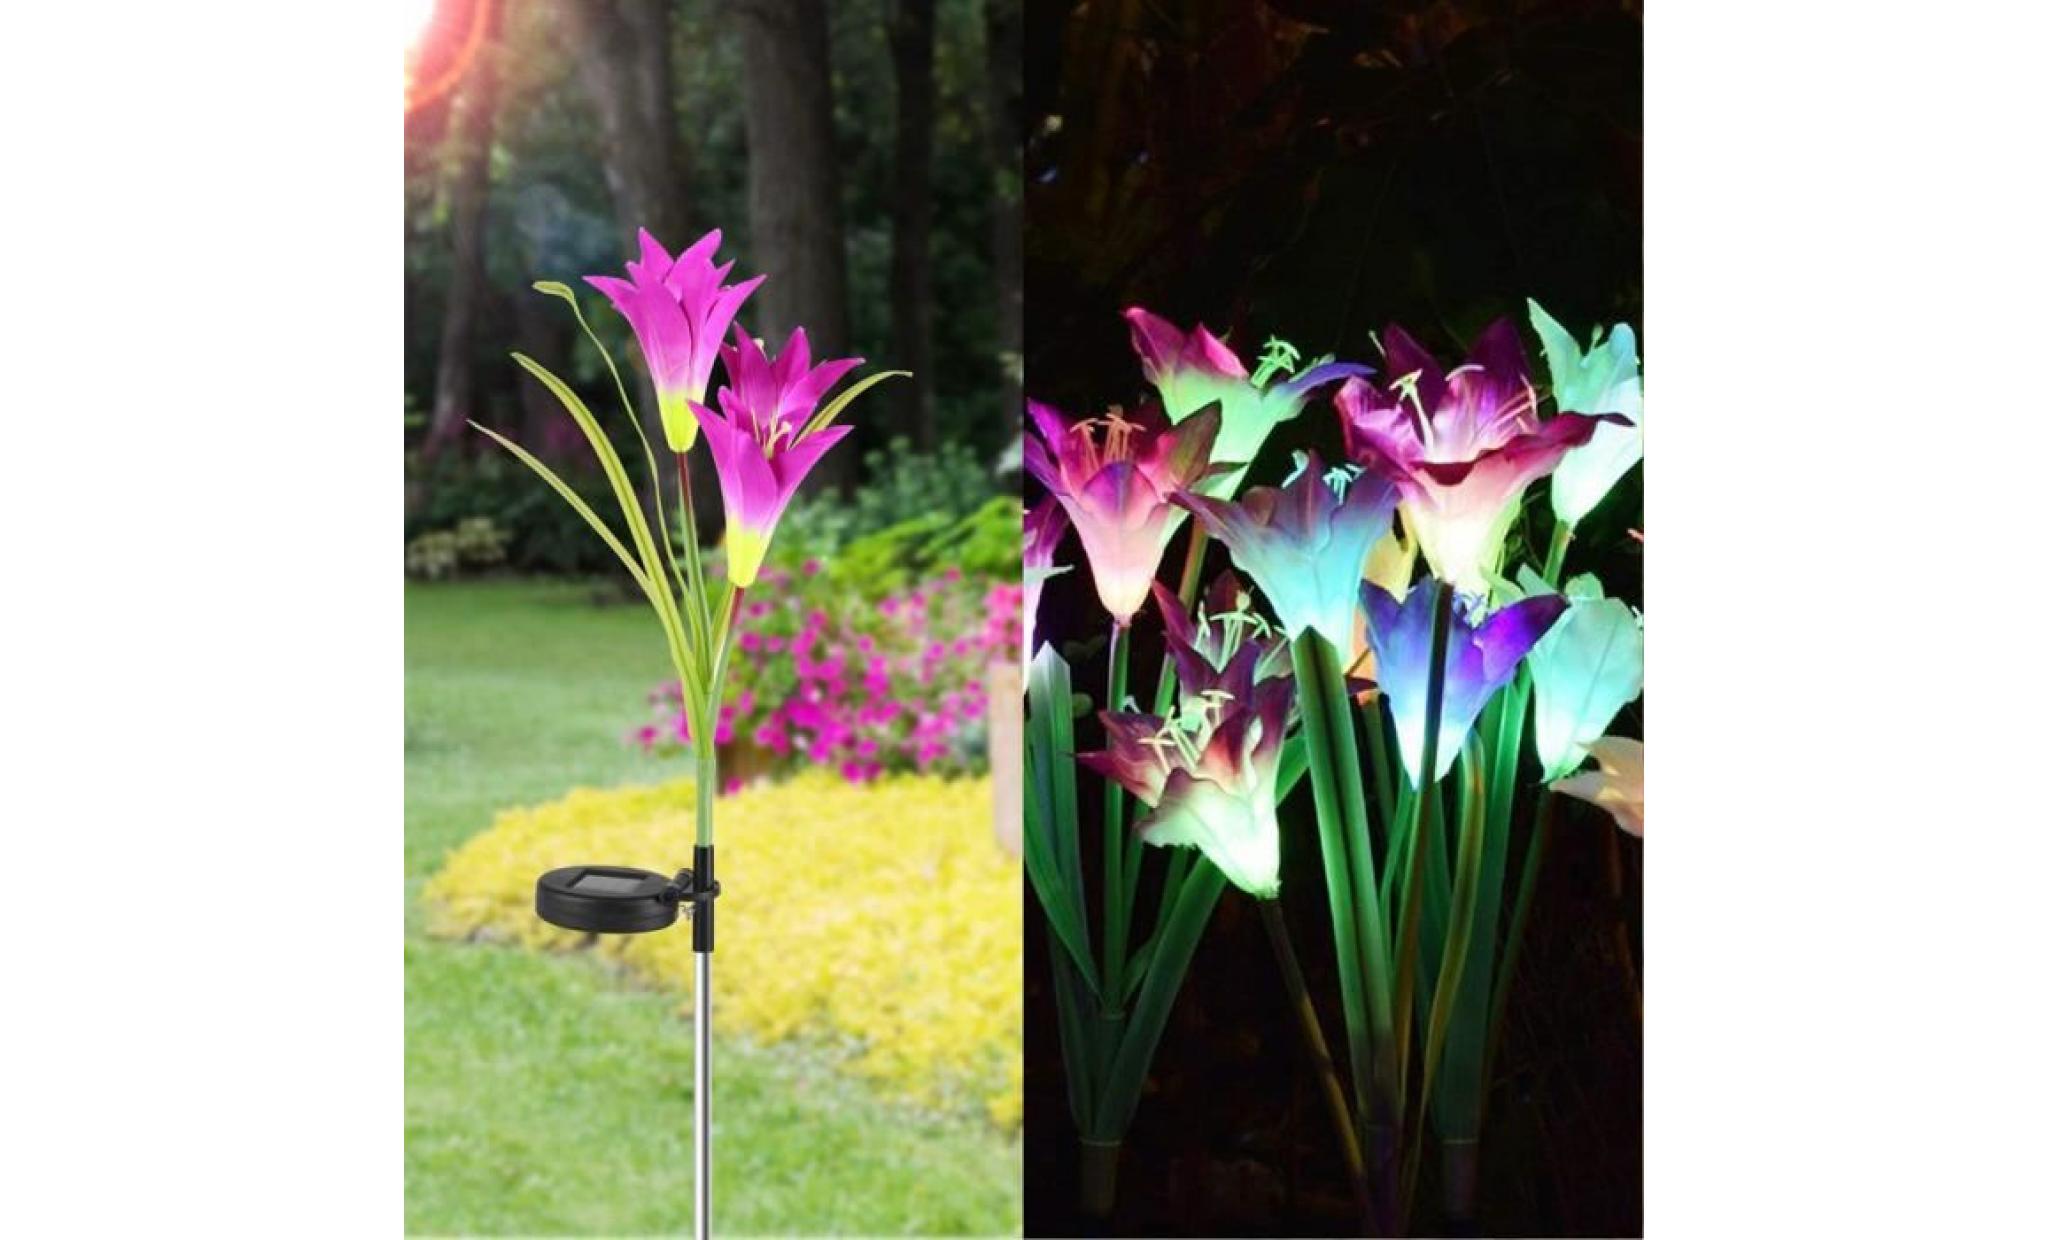 borne solaire 2 pcs fleur de lys jardin solaire actionné pieu lumières lumières fleurs artificielles led lumière #la 131